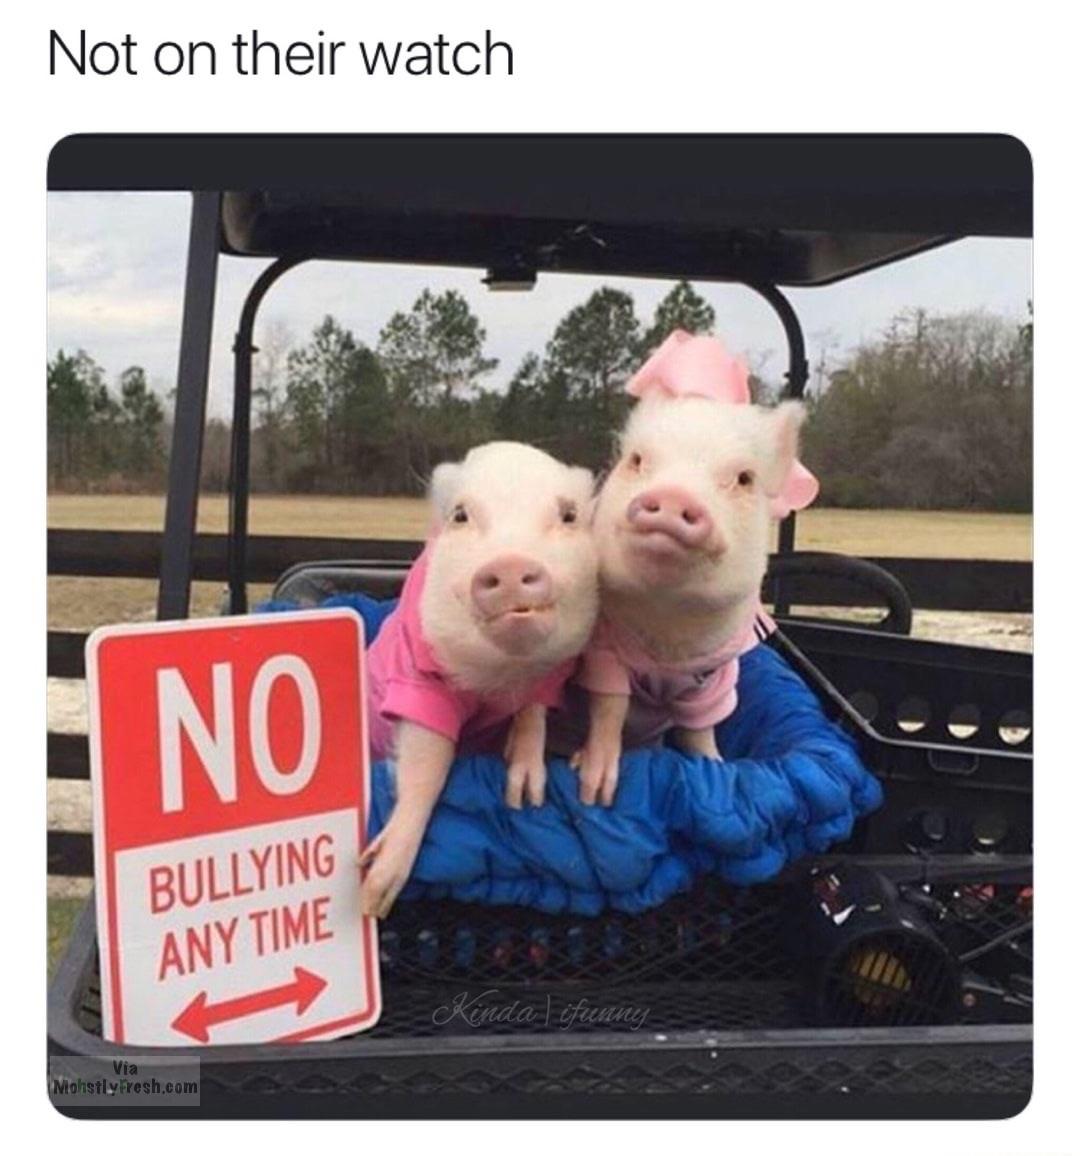 pig - Not on their watch No Bullying Any Time Kinda lifunny via Niohstly Fresh.com